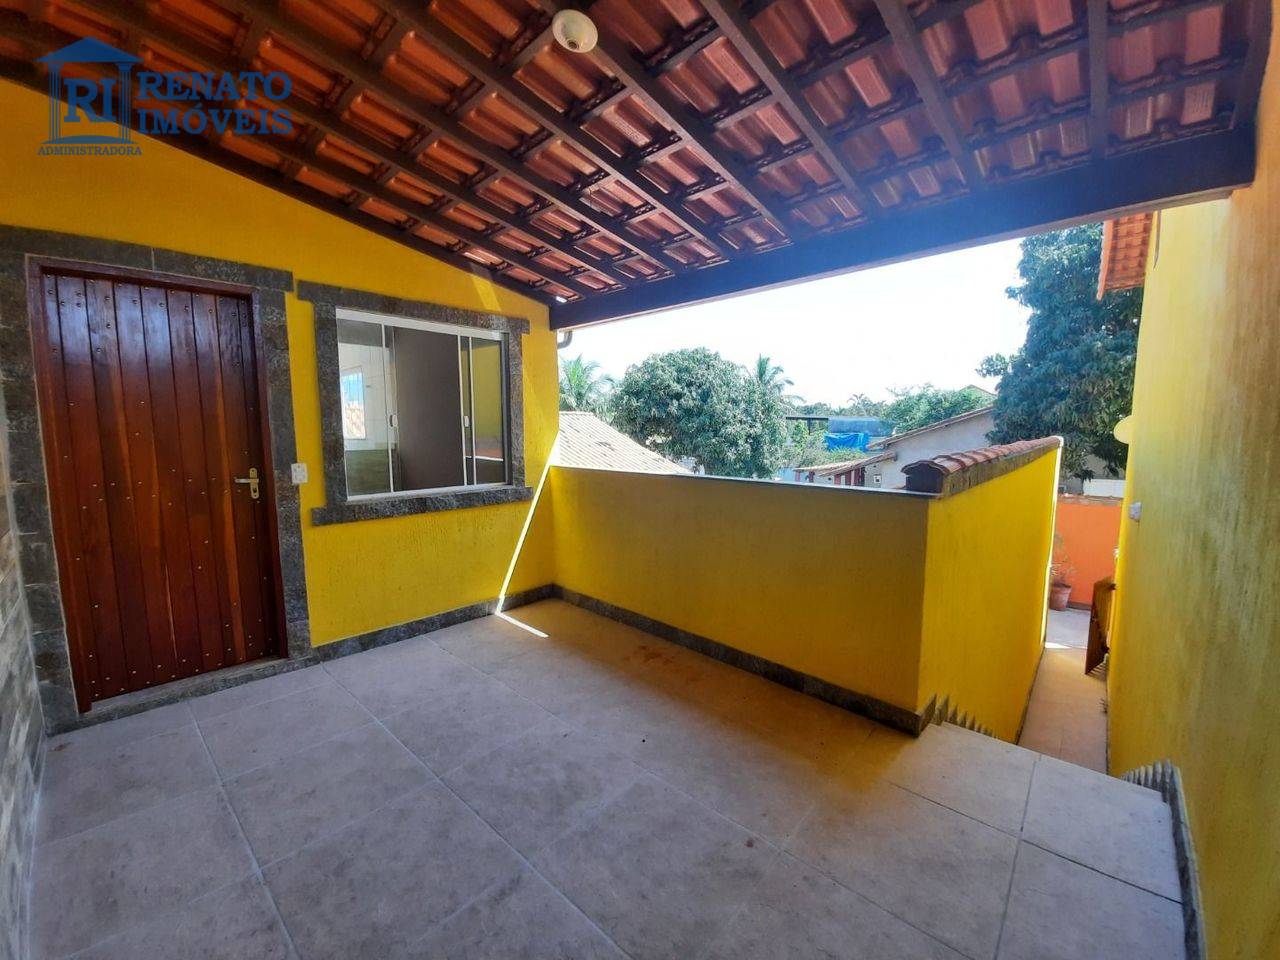 Casa com 2 dormitórios para alugar por R$ 1.400,00/mês - Araçatiba - Maricá/RJ